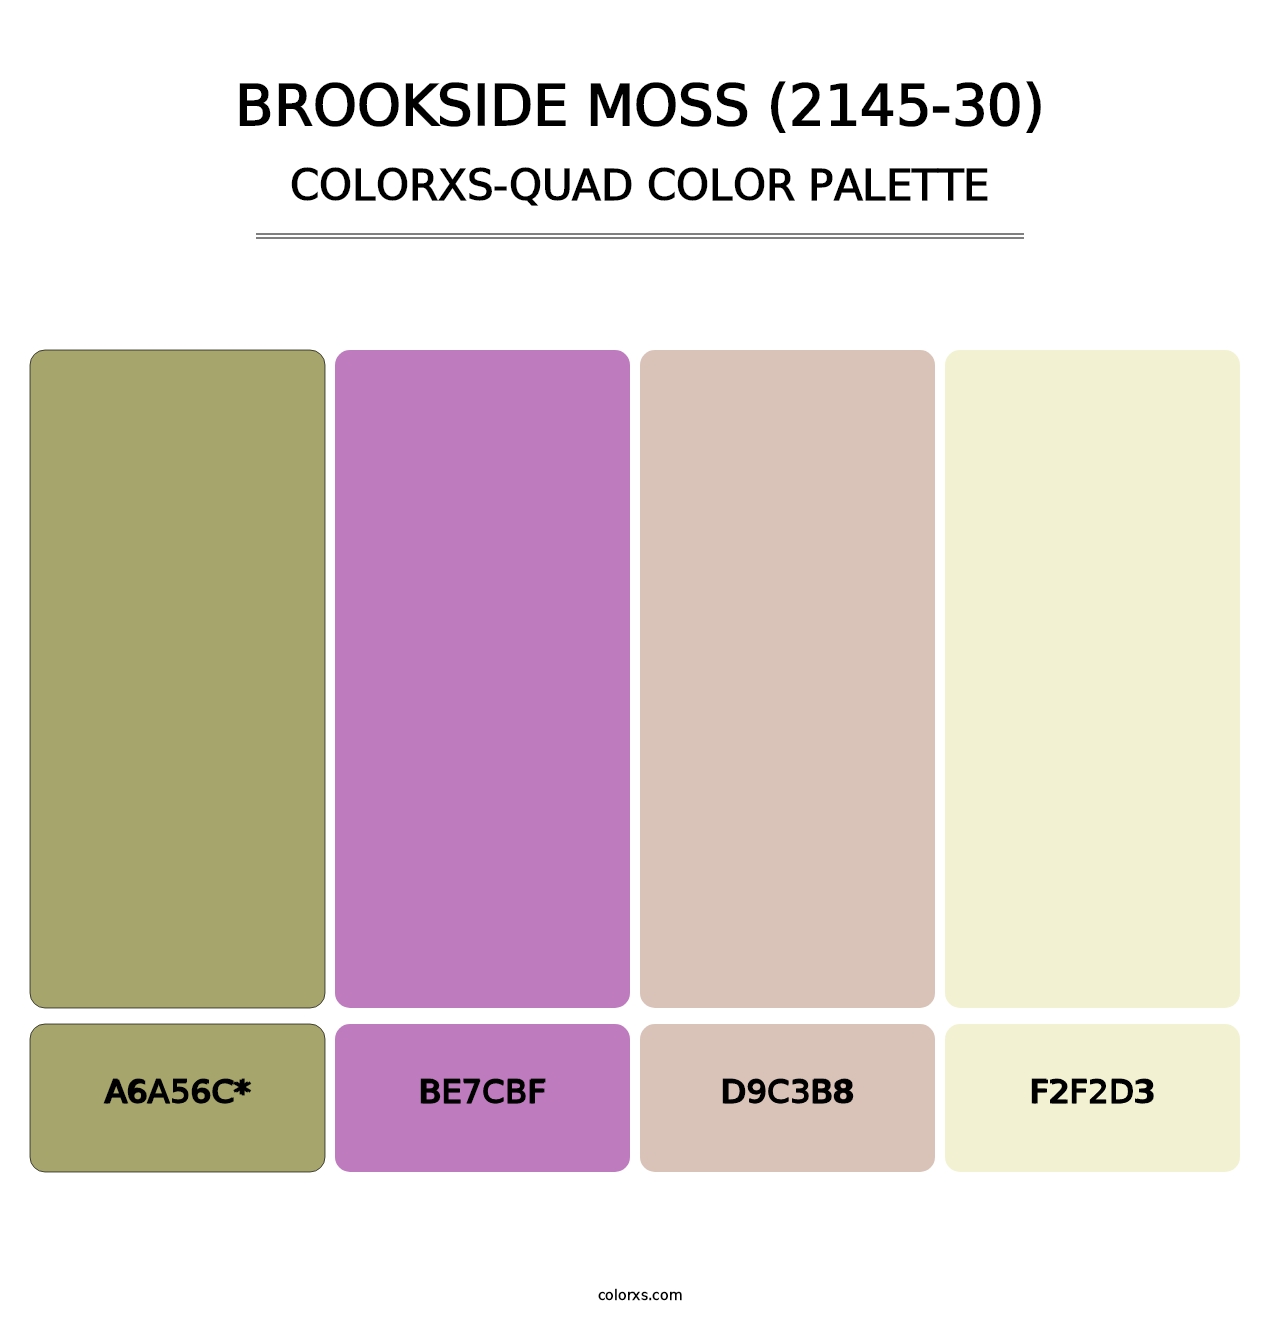 Brookside Moss (2145-30) - Colorxs Quad Palette